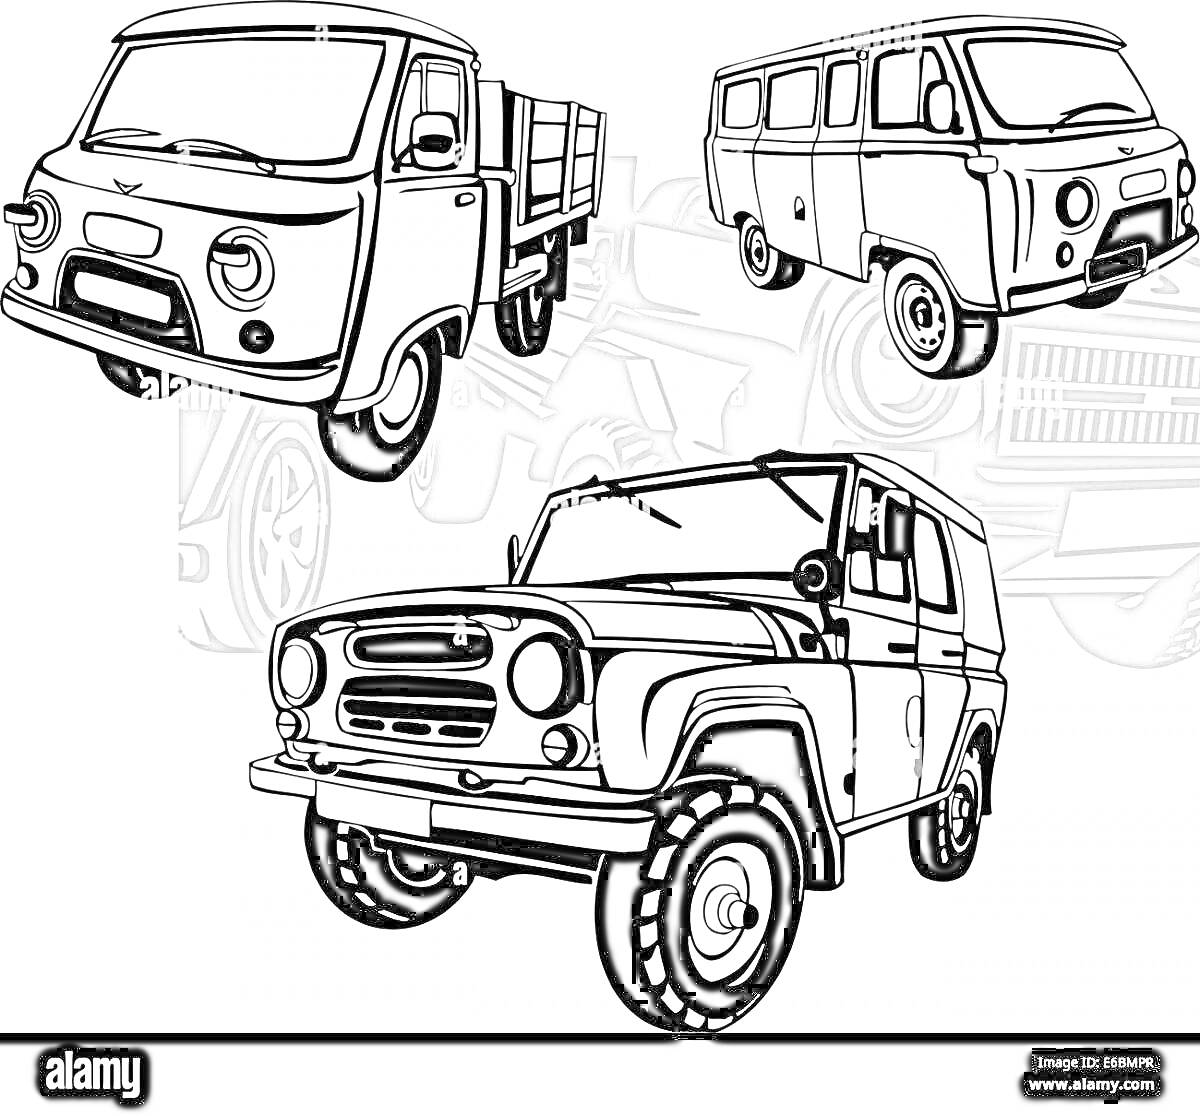 Раскраска Раскраска с изображением автомобилей УАЗ 3303 и других моделей УАЗ